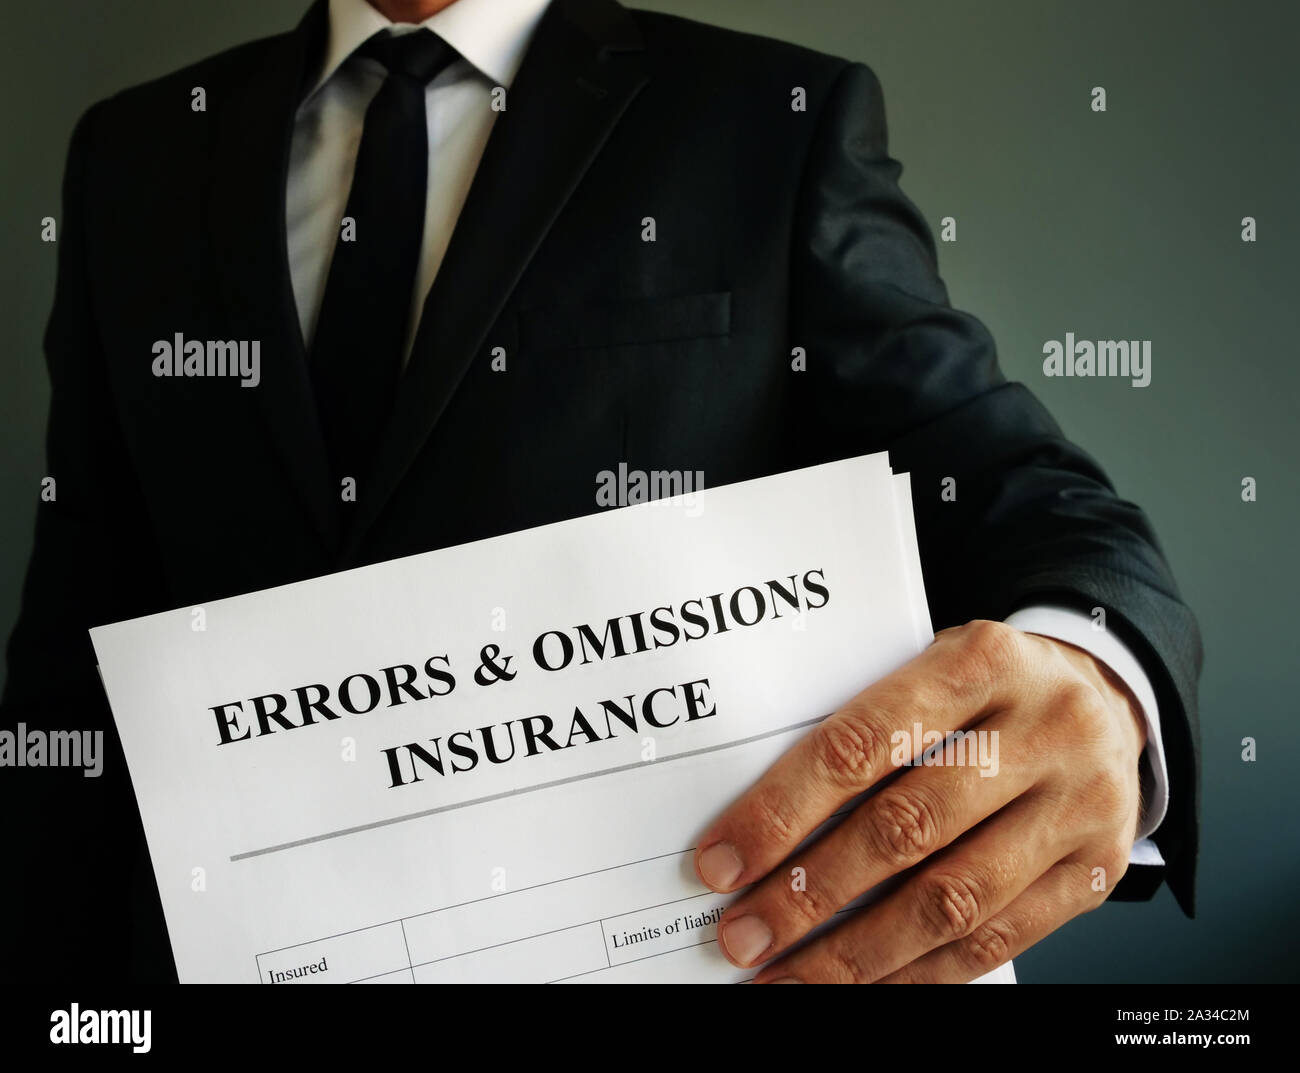 Errores y omisiones E&O seguro de responsabilidad profesional o política en las manos. Foto de stock